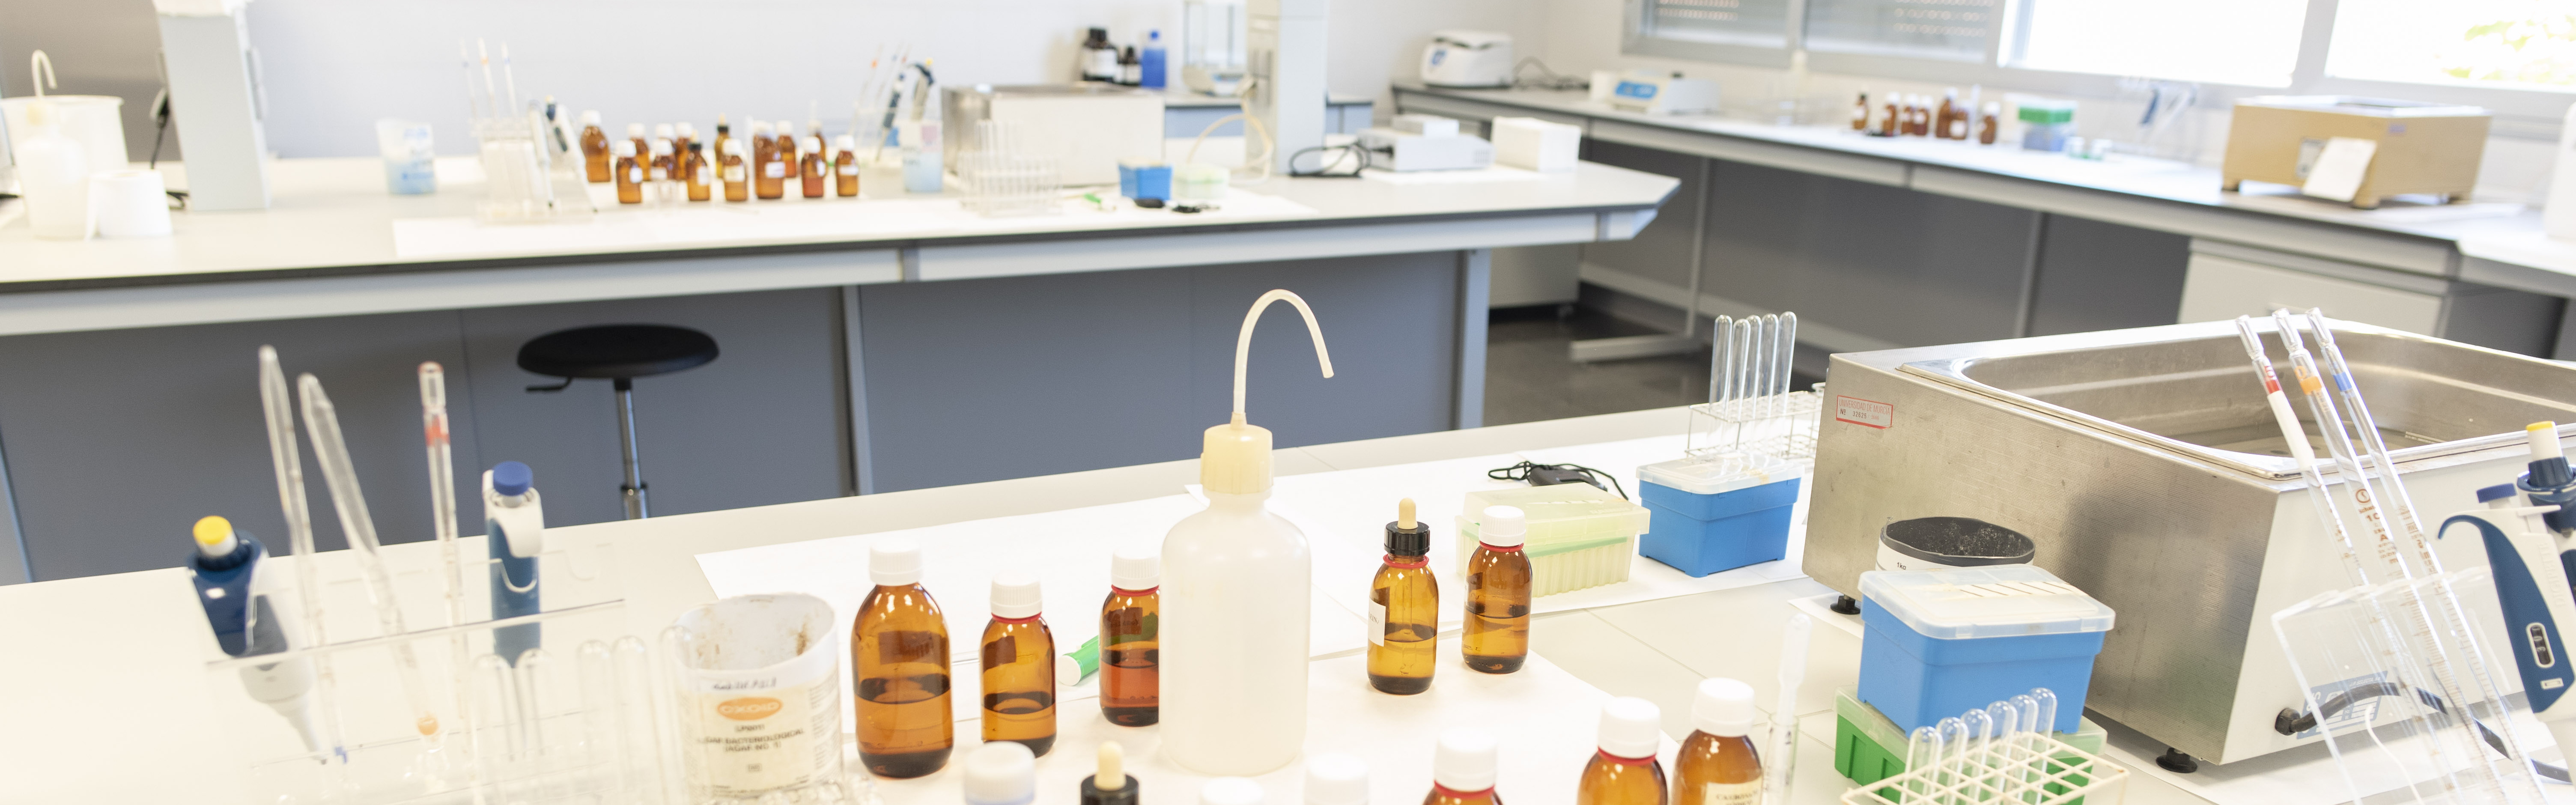 Inaugurado el laboratorio de prácticas de Bioquímica, Química y Materiales Ópticos